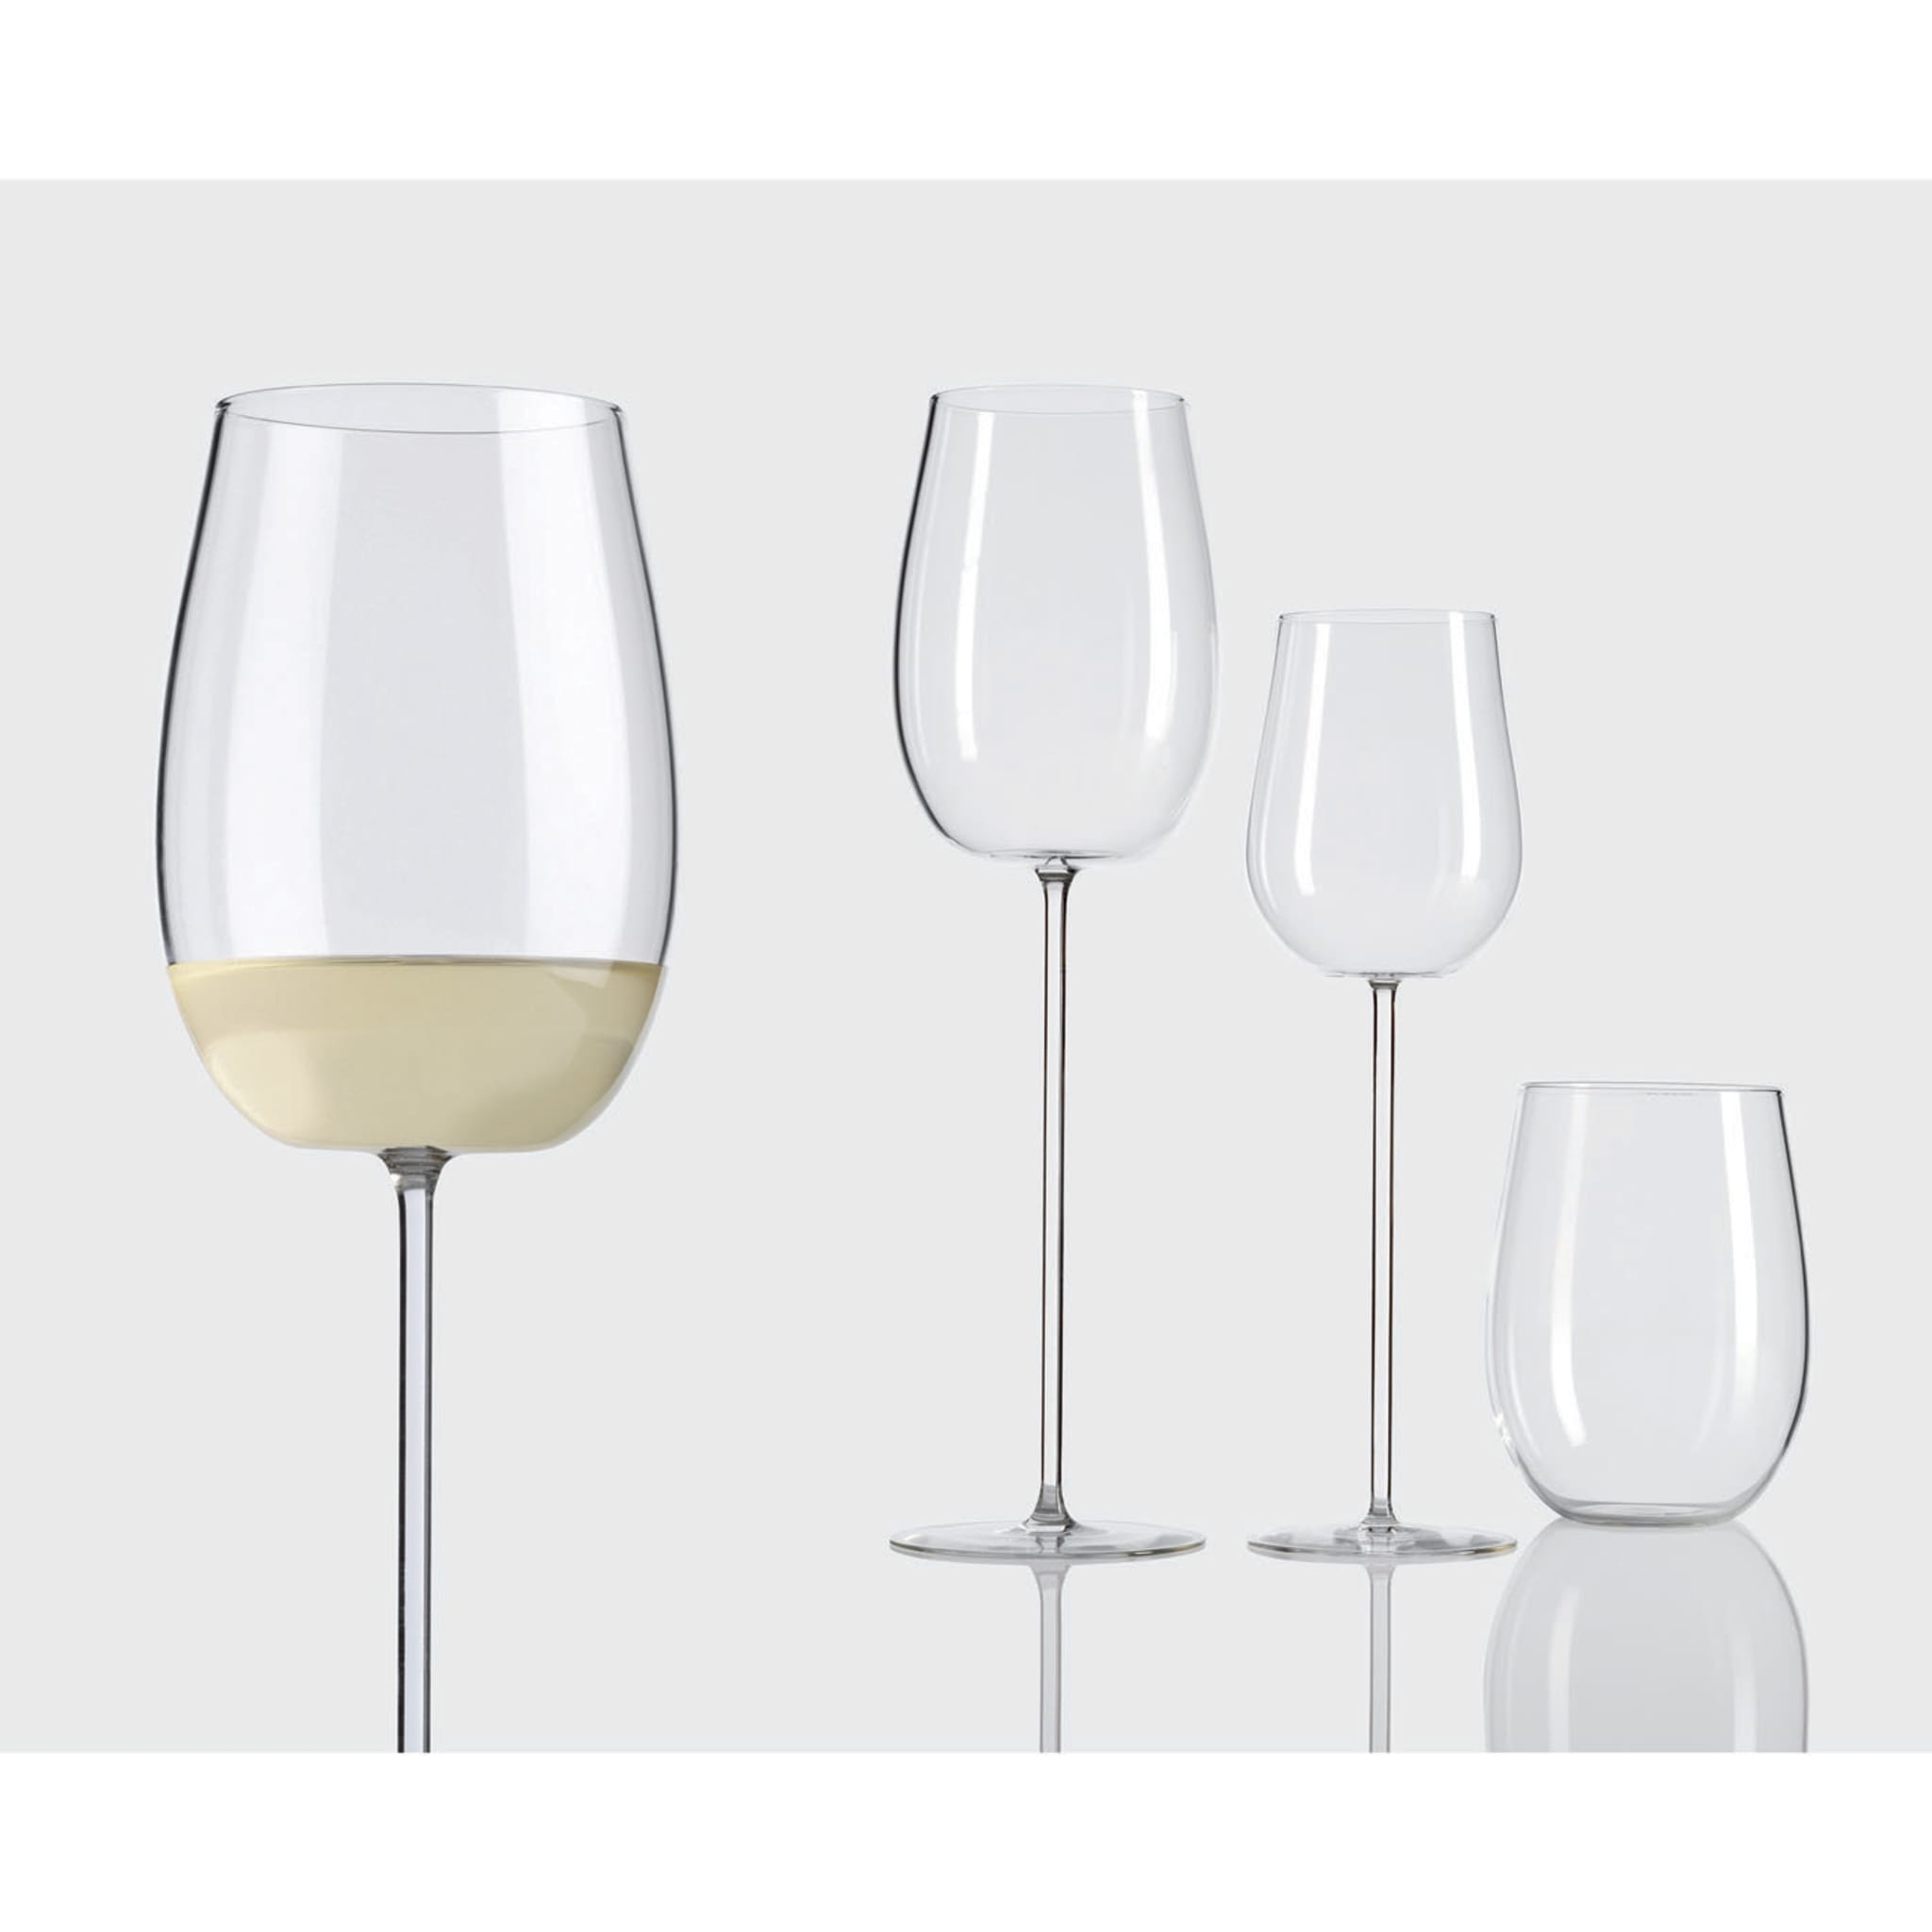 Set of 6 Modigliani White Wine Glasses - Alternative view 1